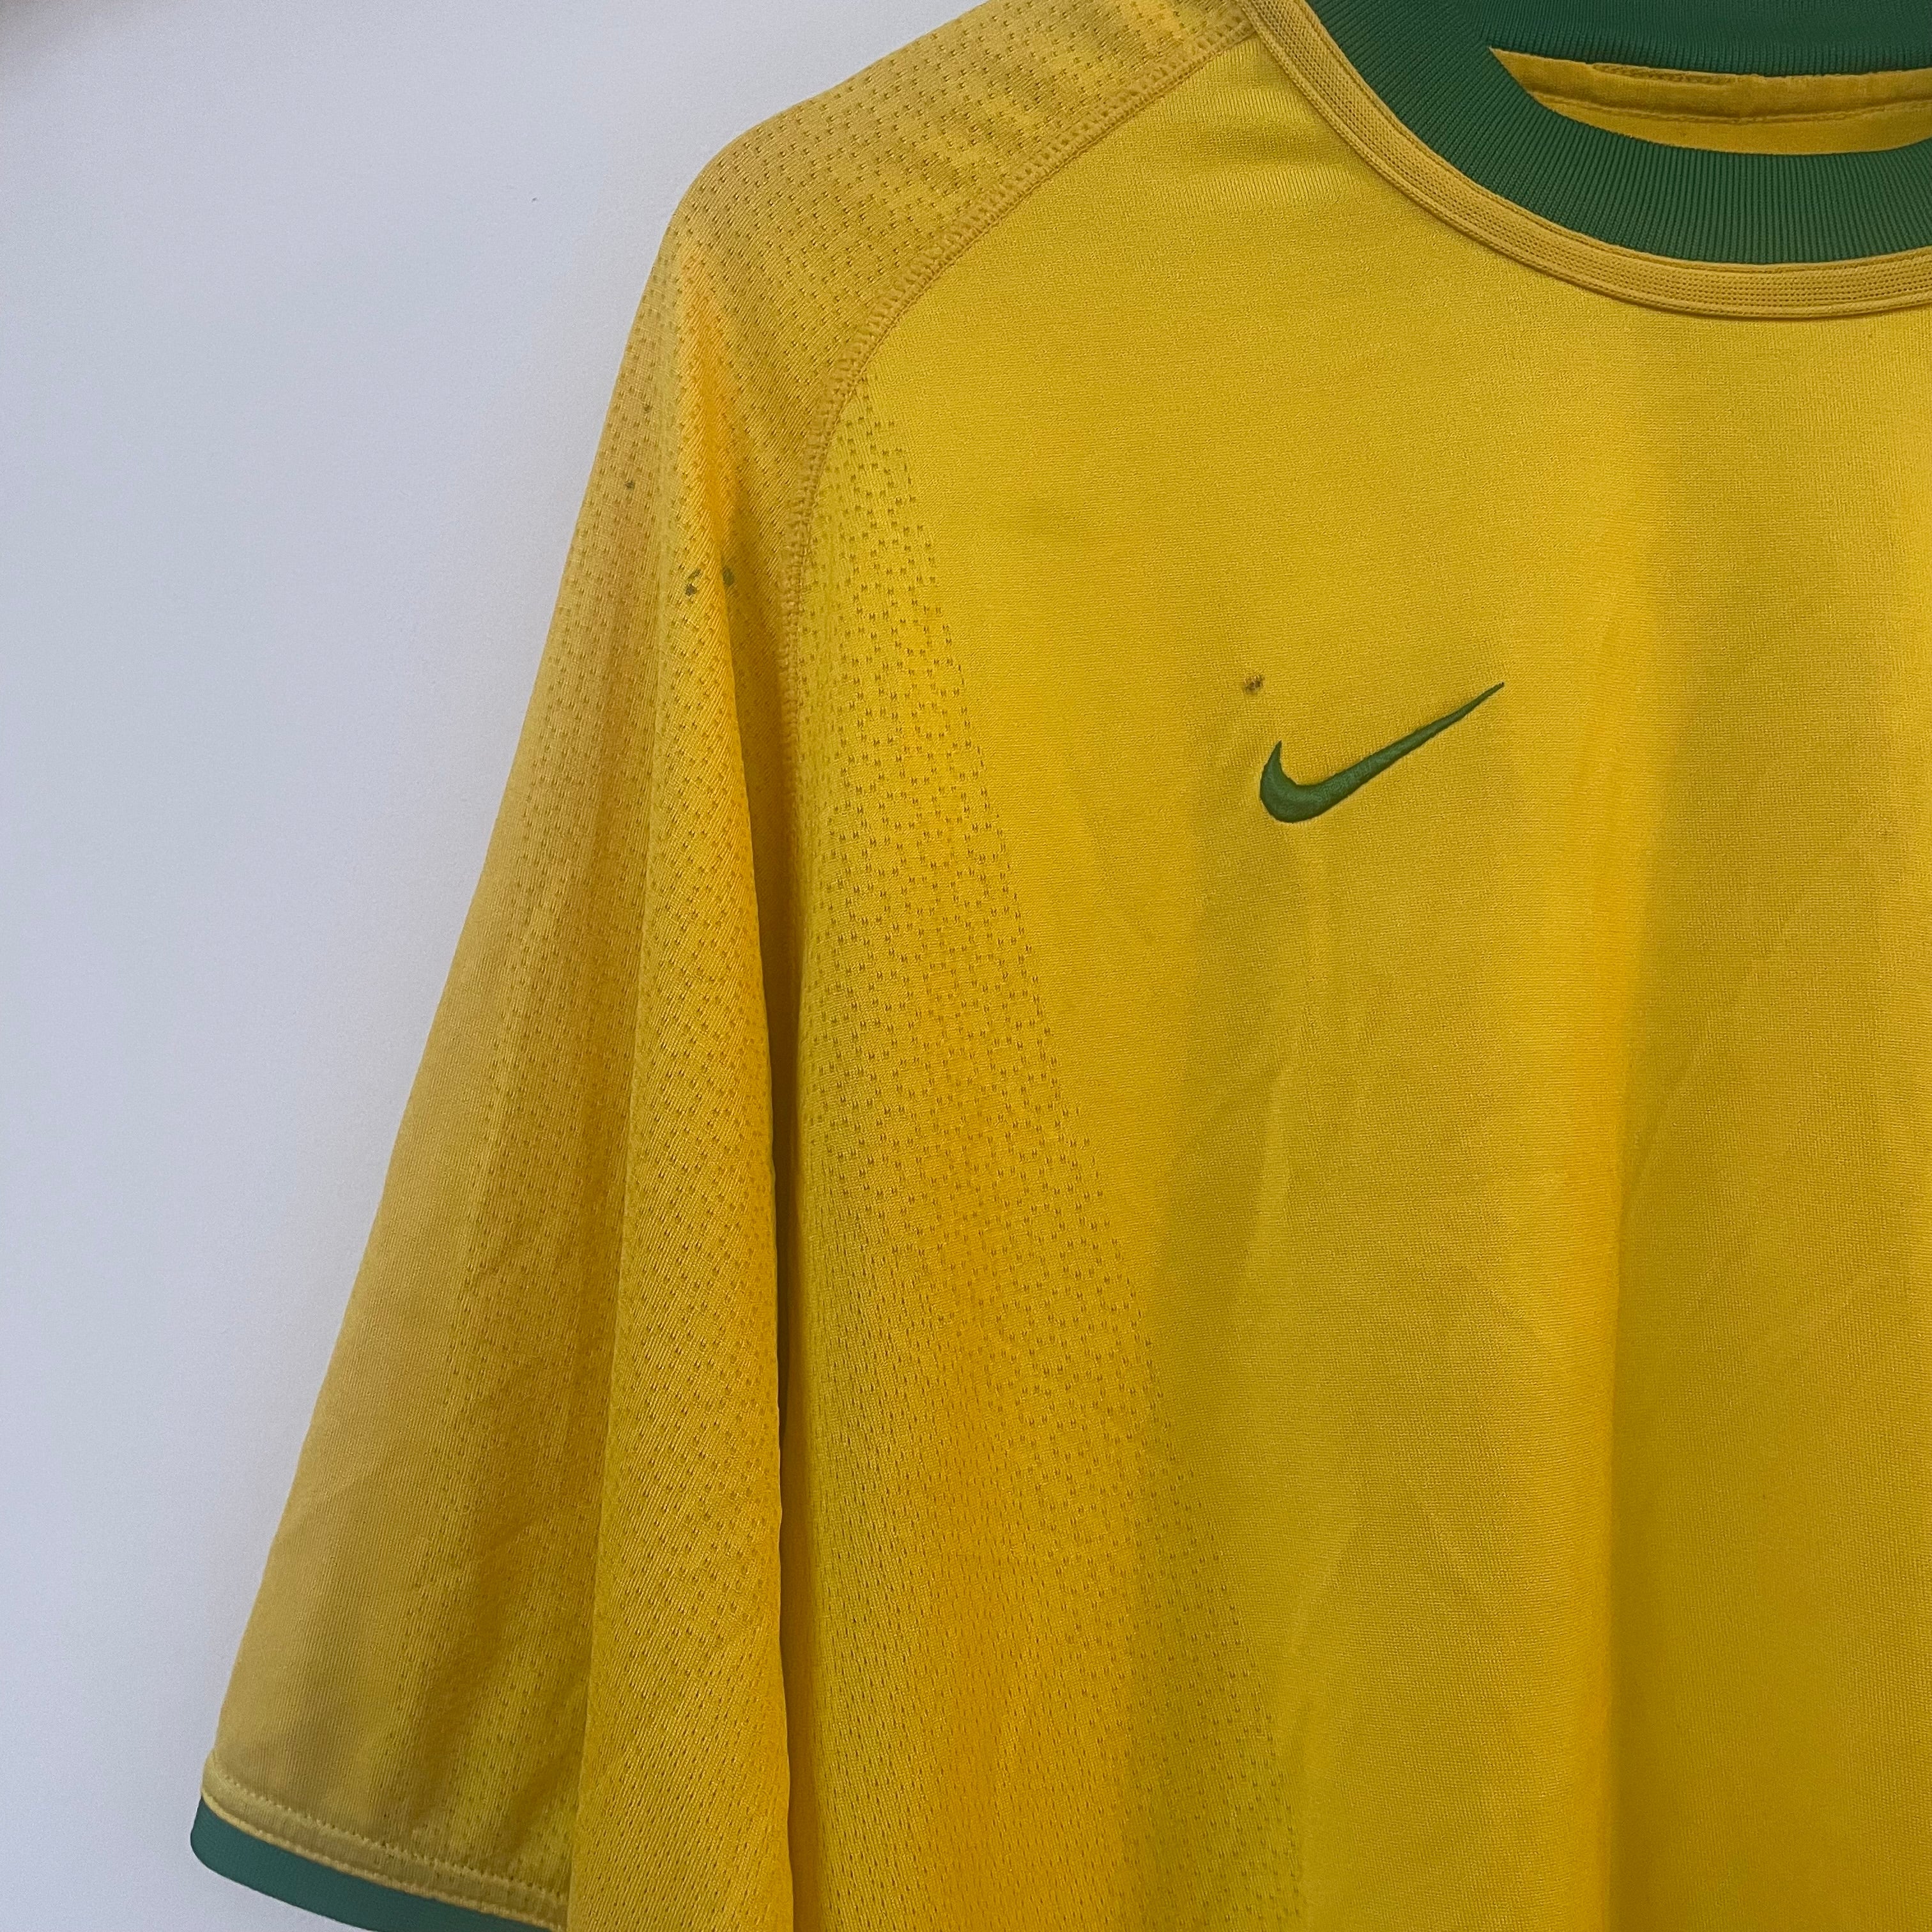 Brazil 2000 Home Shirt (XL)